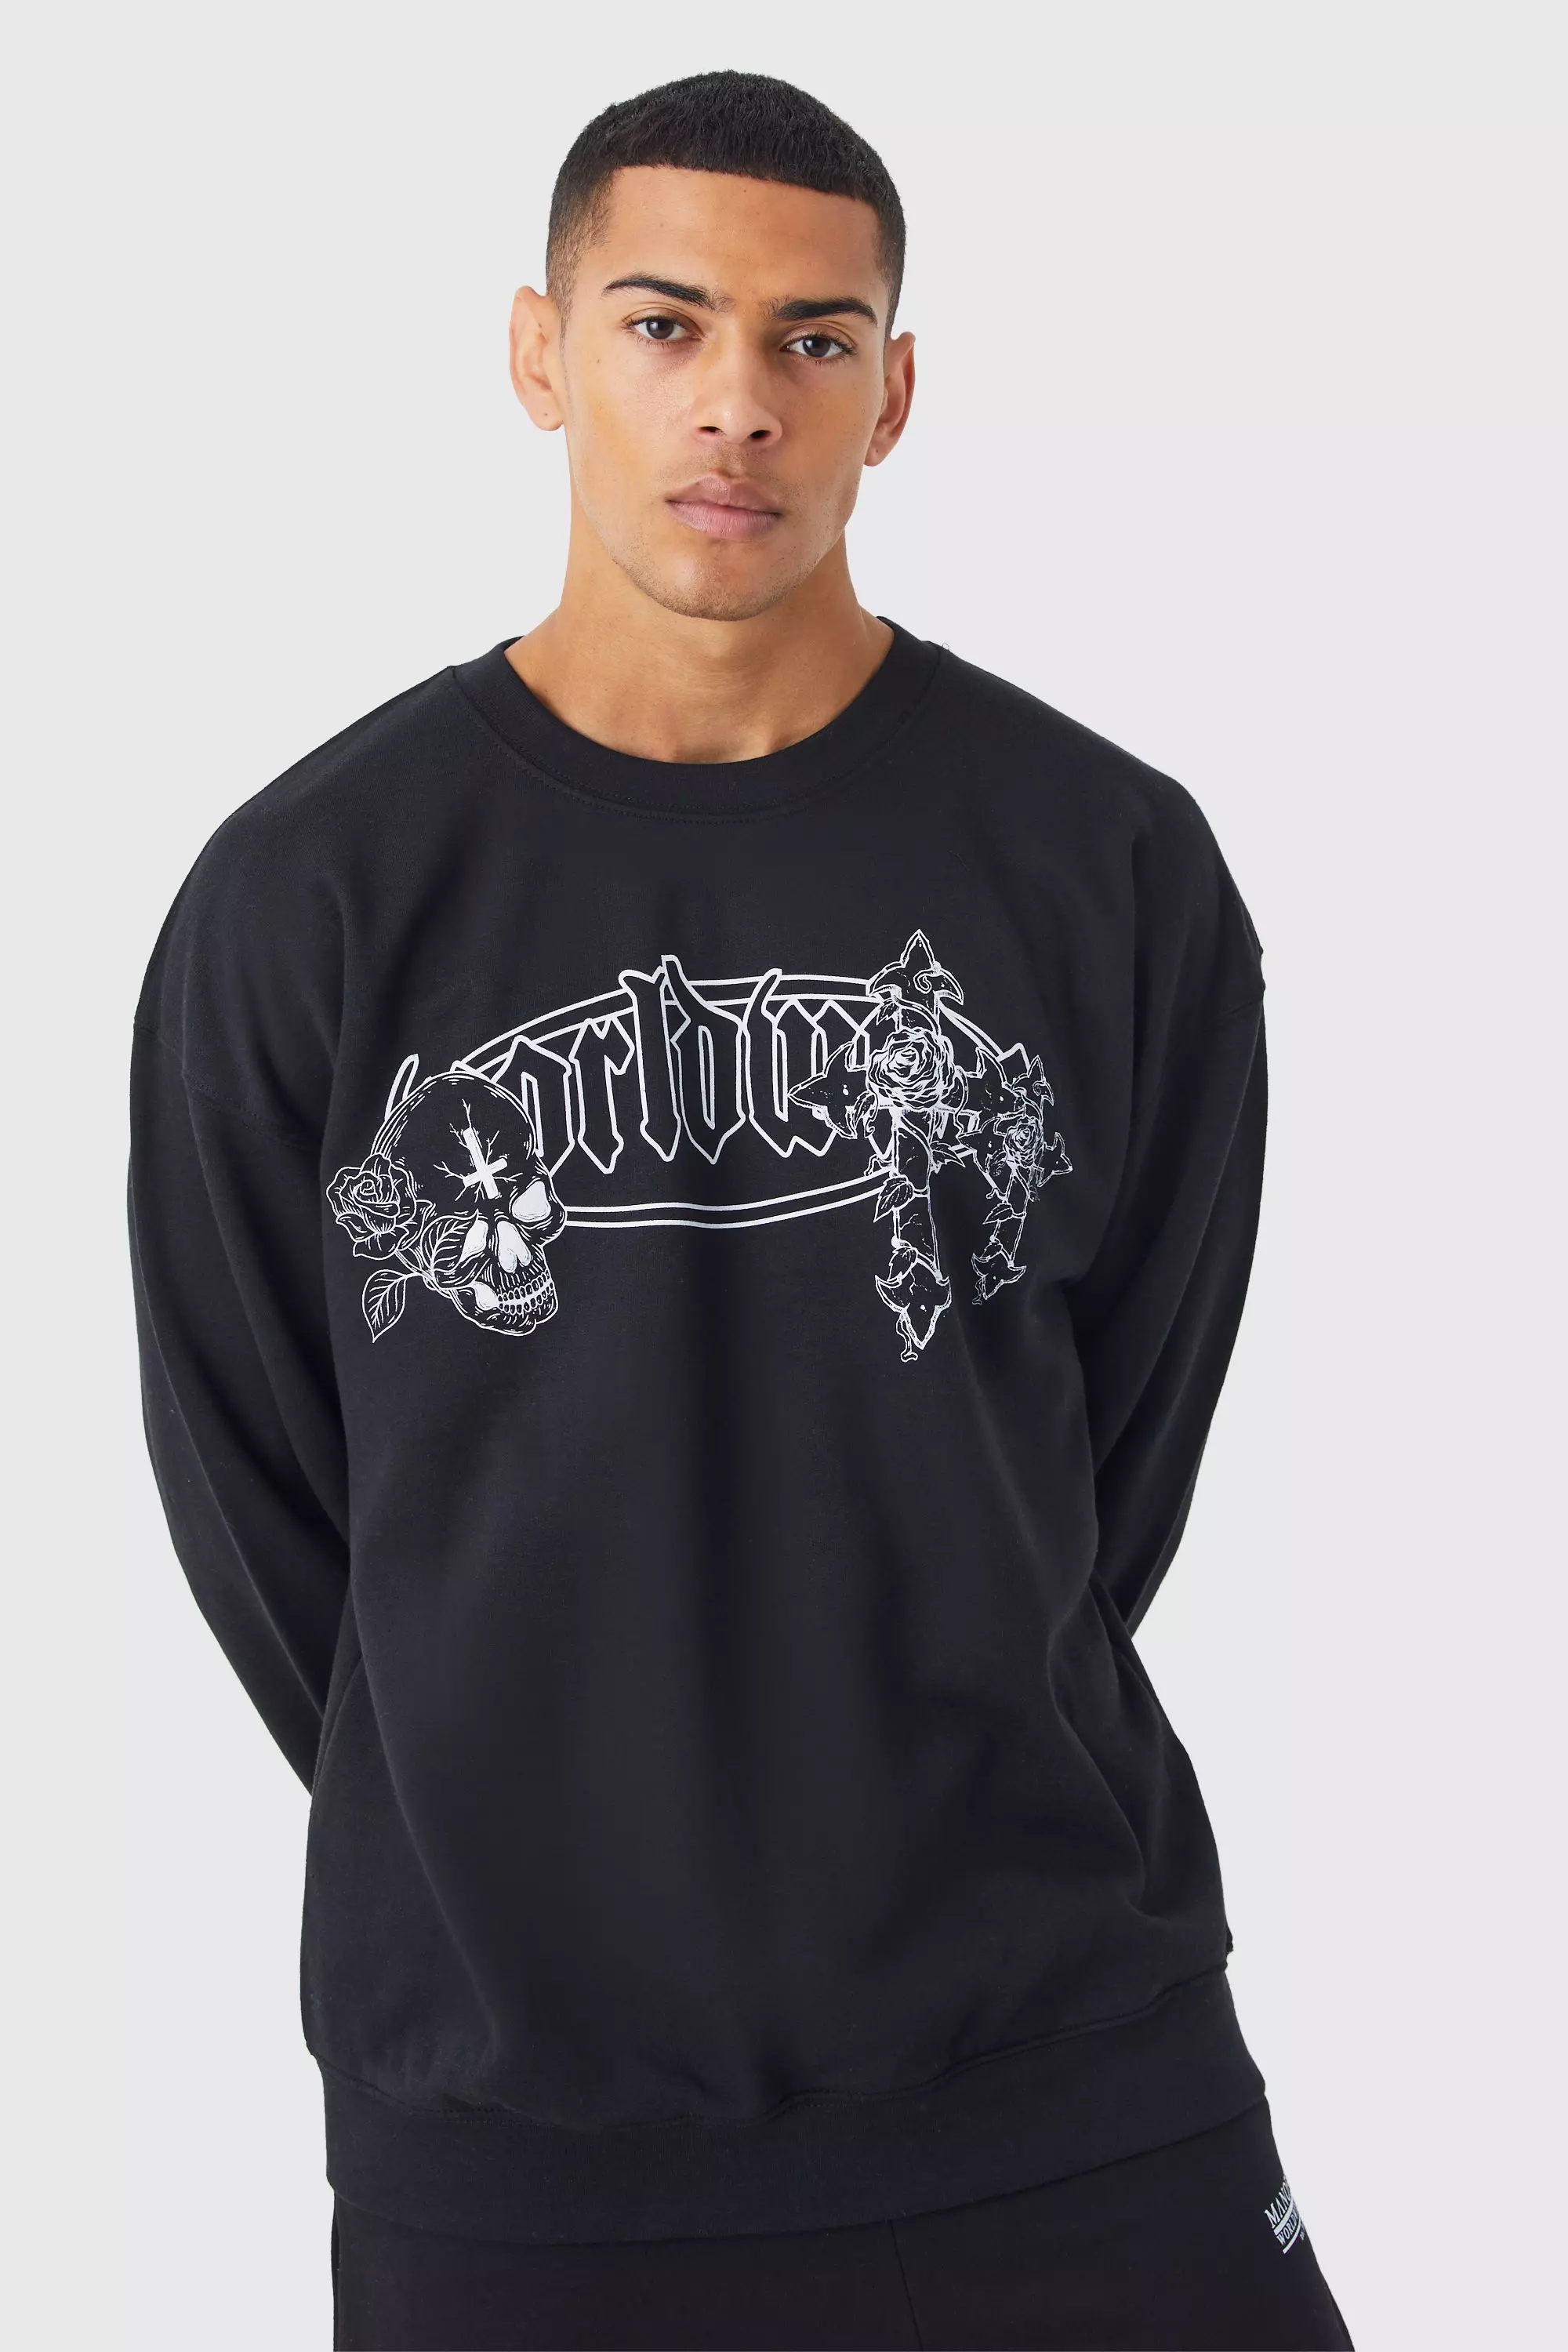 Oversized Worldwide Graphic Sweatshirt Black